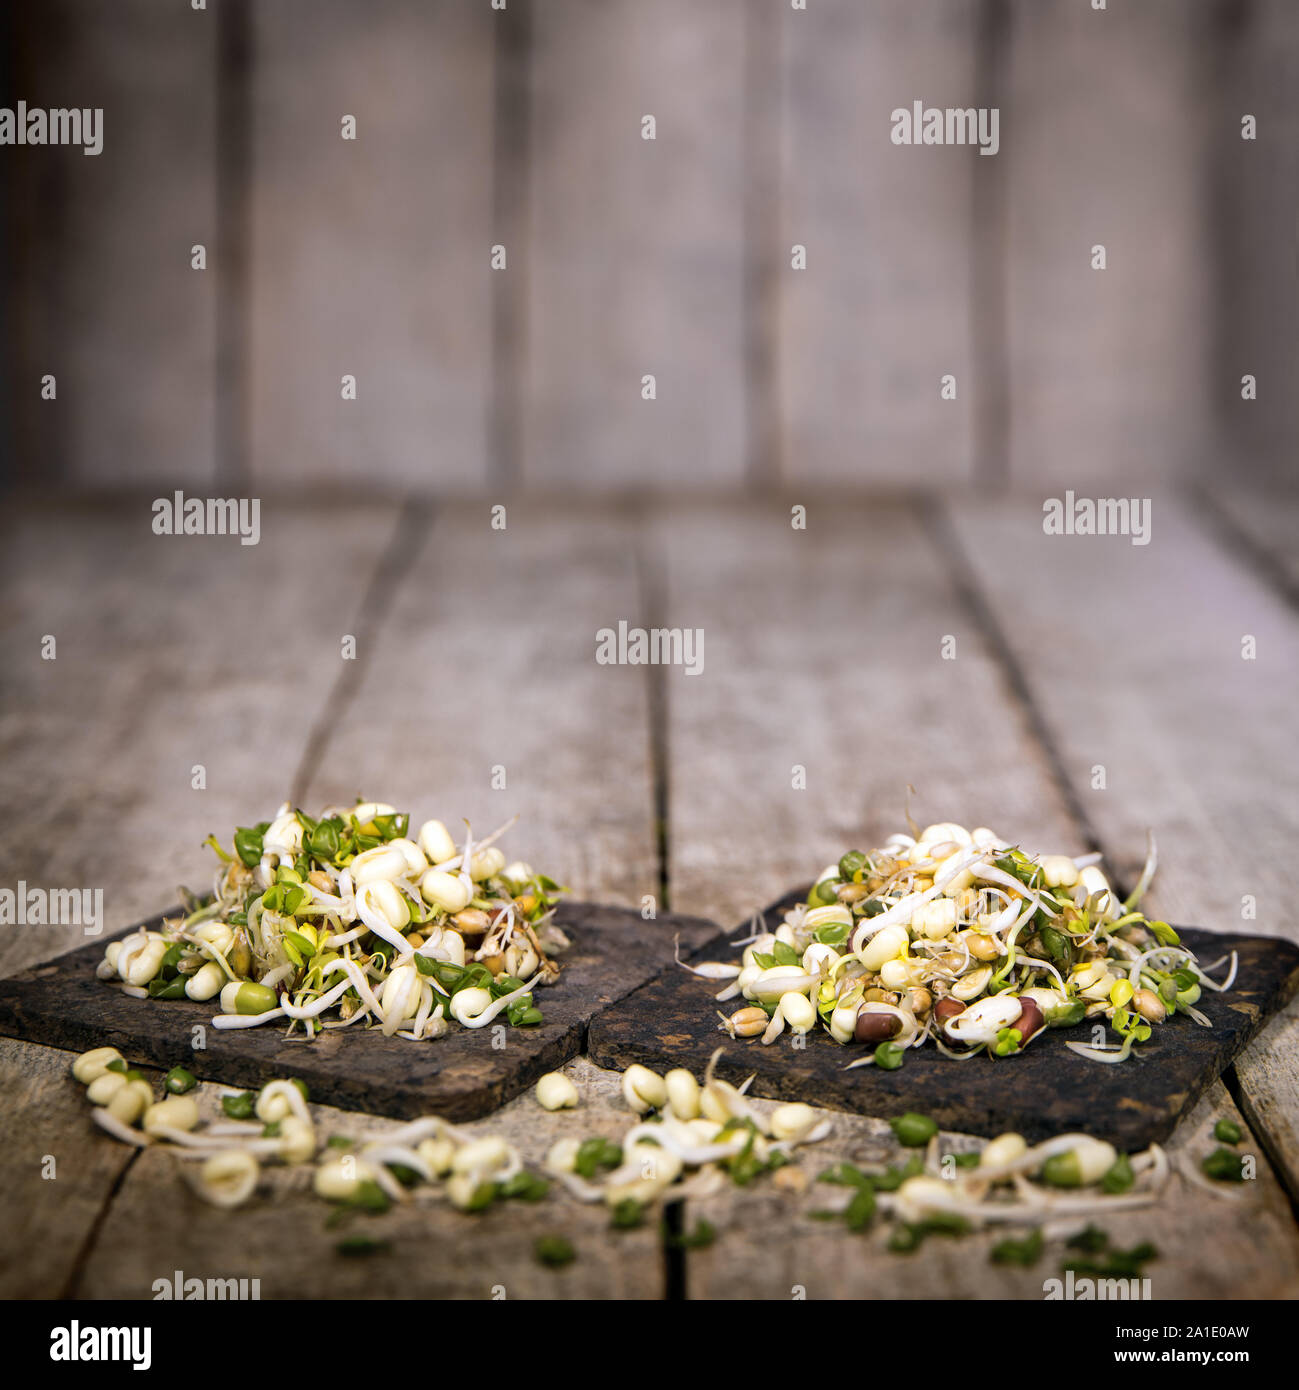 Mung bean i germogli di fronte un rustico in legno con sfondo copyspace Foto Stock